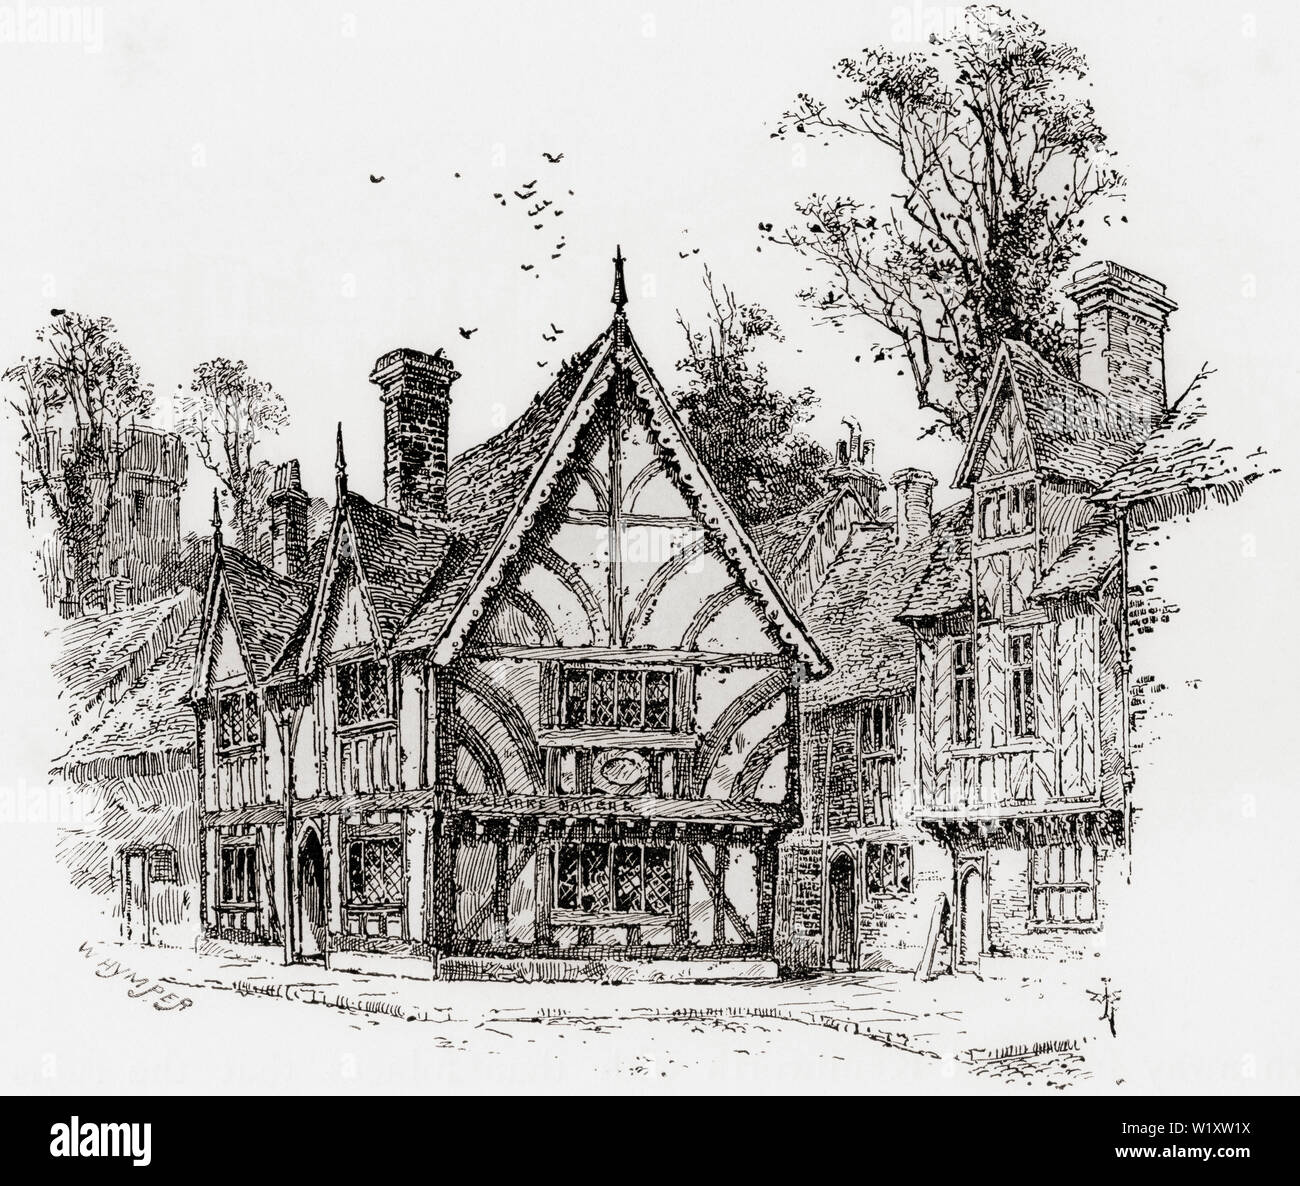 Ein altes Fachwerkhaus in der Castle Street, Warwick, Warwickshire, England, hier im 19. Jahrhundert. Aus dem Englischen Bilder, veröffentlicht 1890. Stockfoto